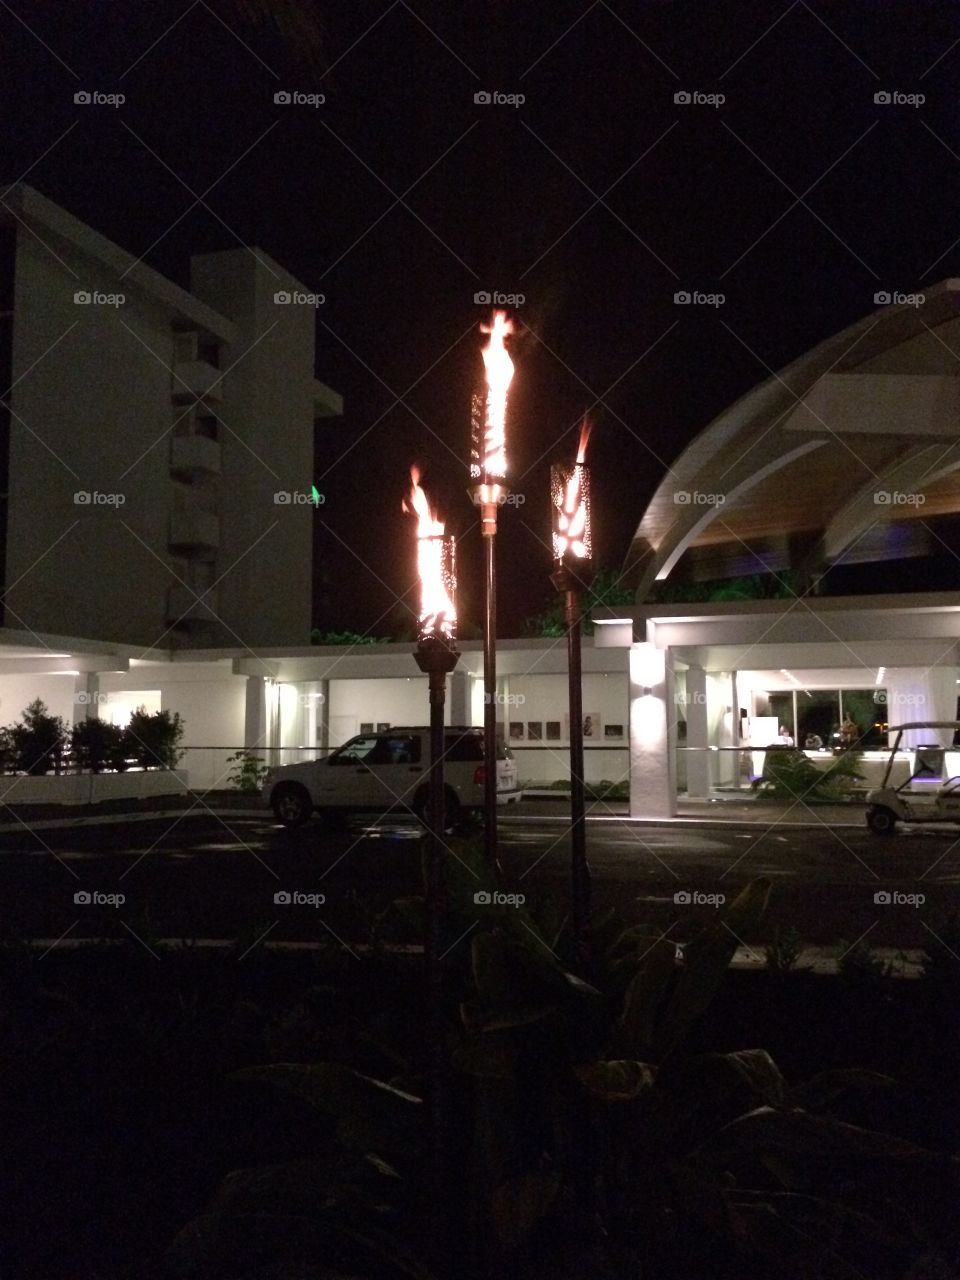 Flaming Hawaiian torches